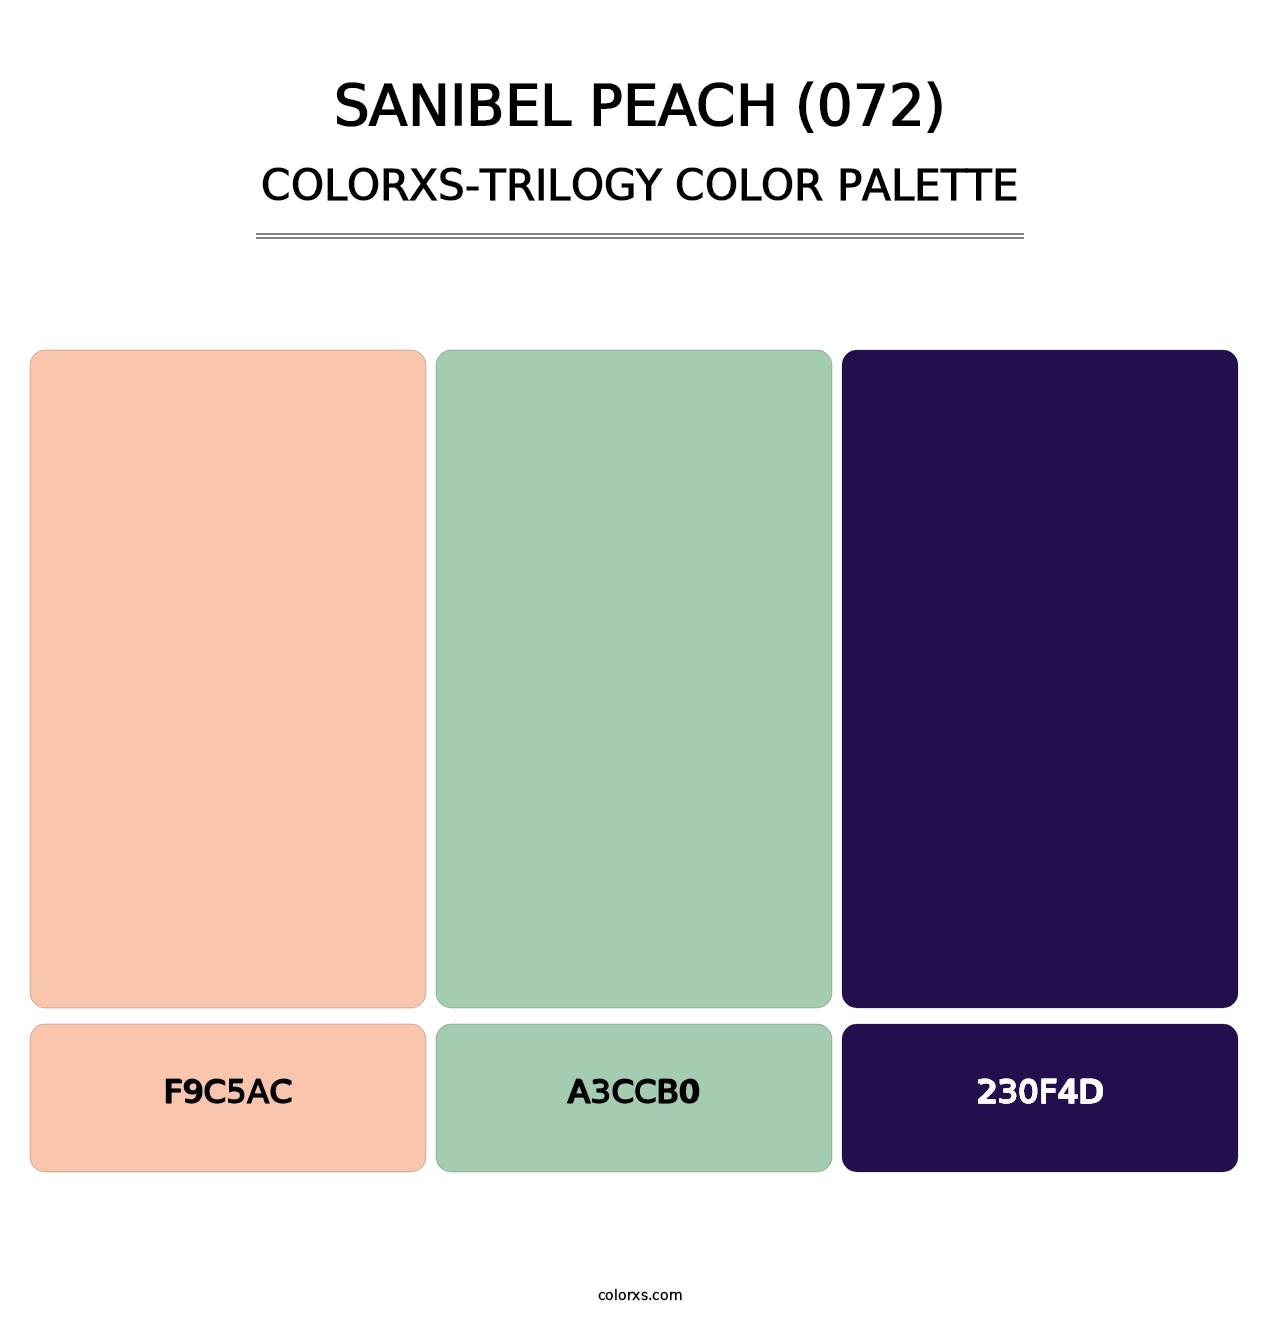 Sanibel Peach (072) - Colorxs Trilogy Palette